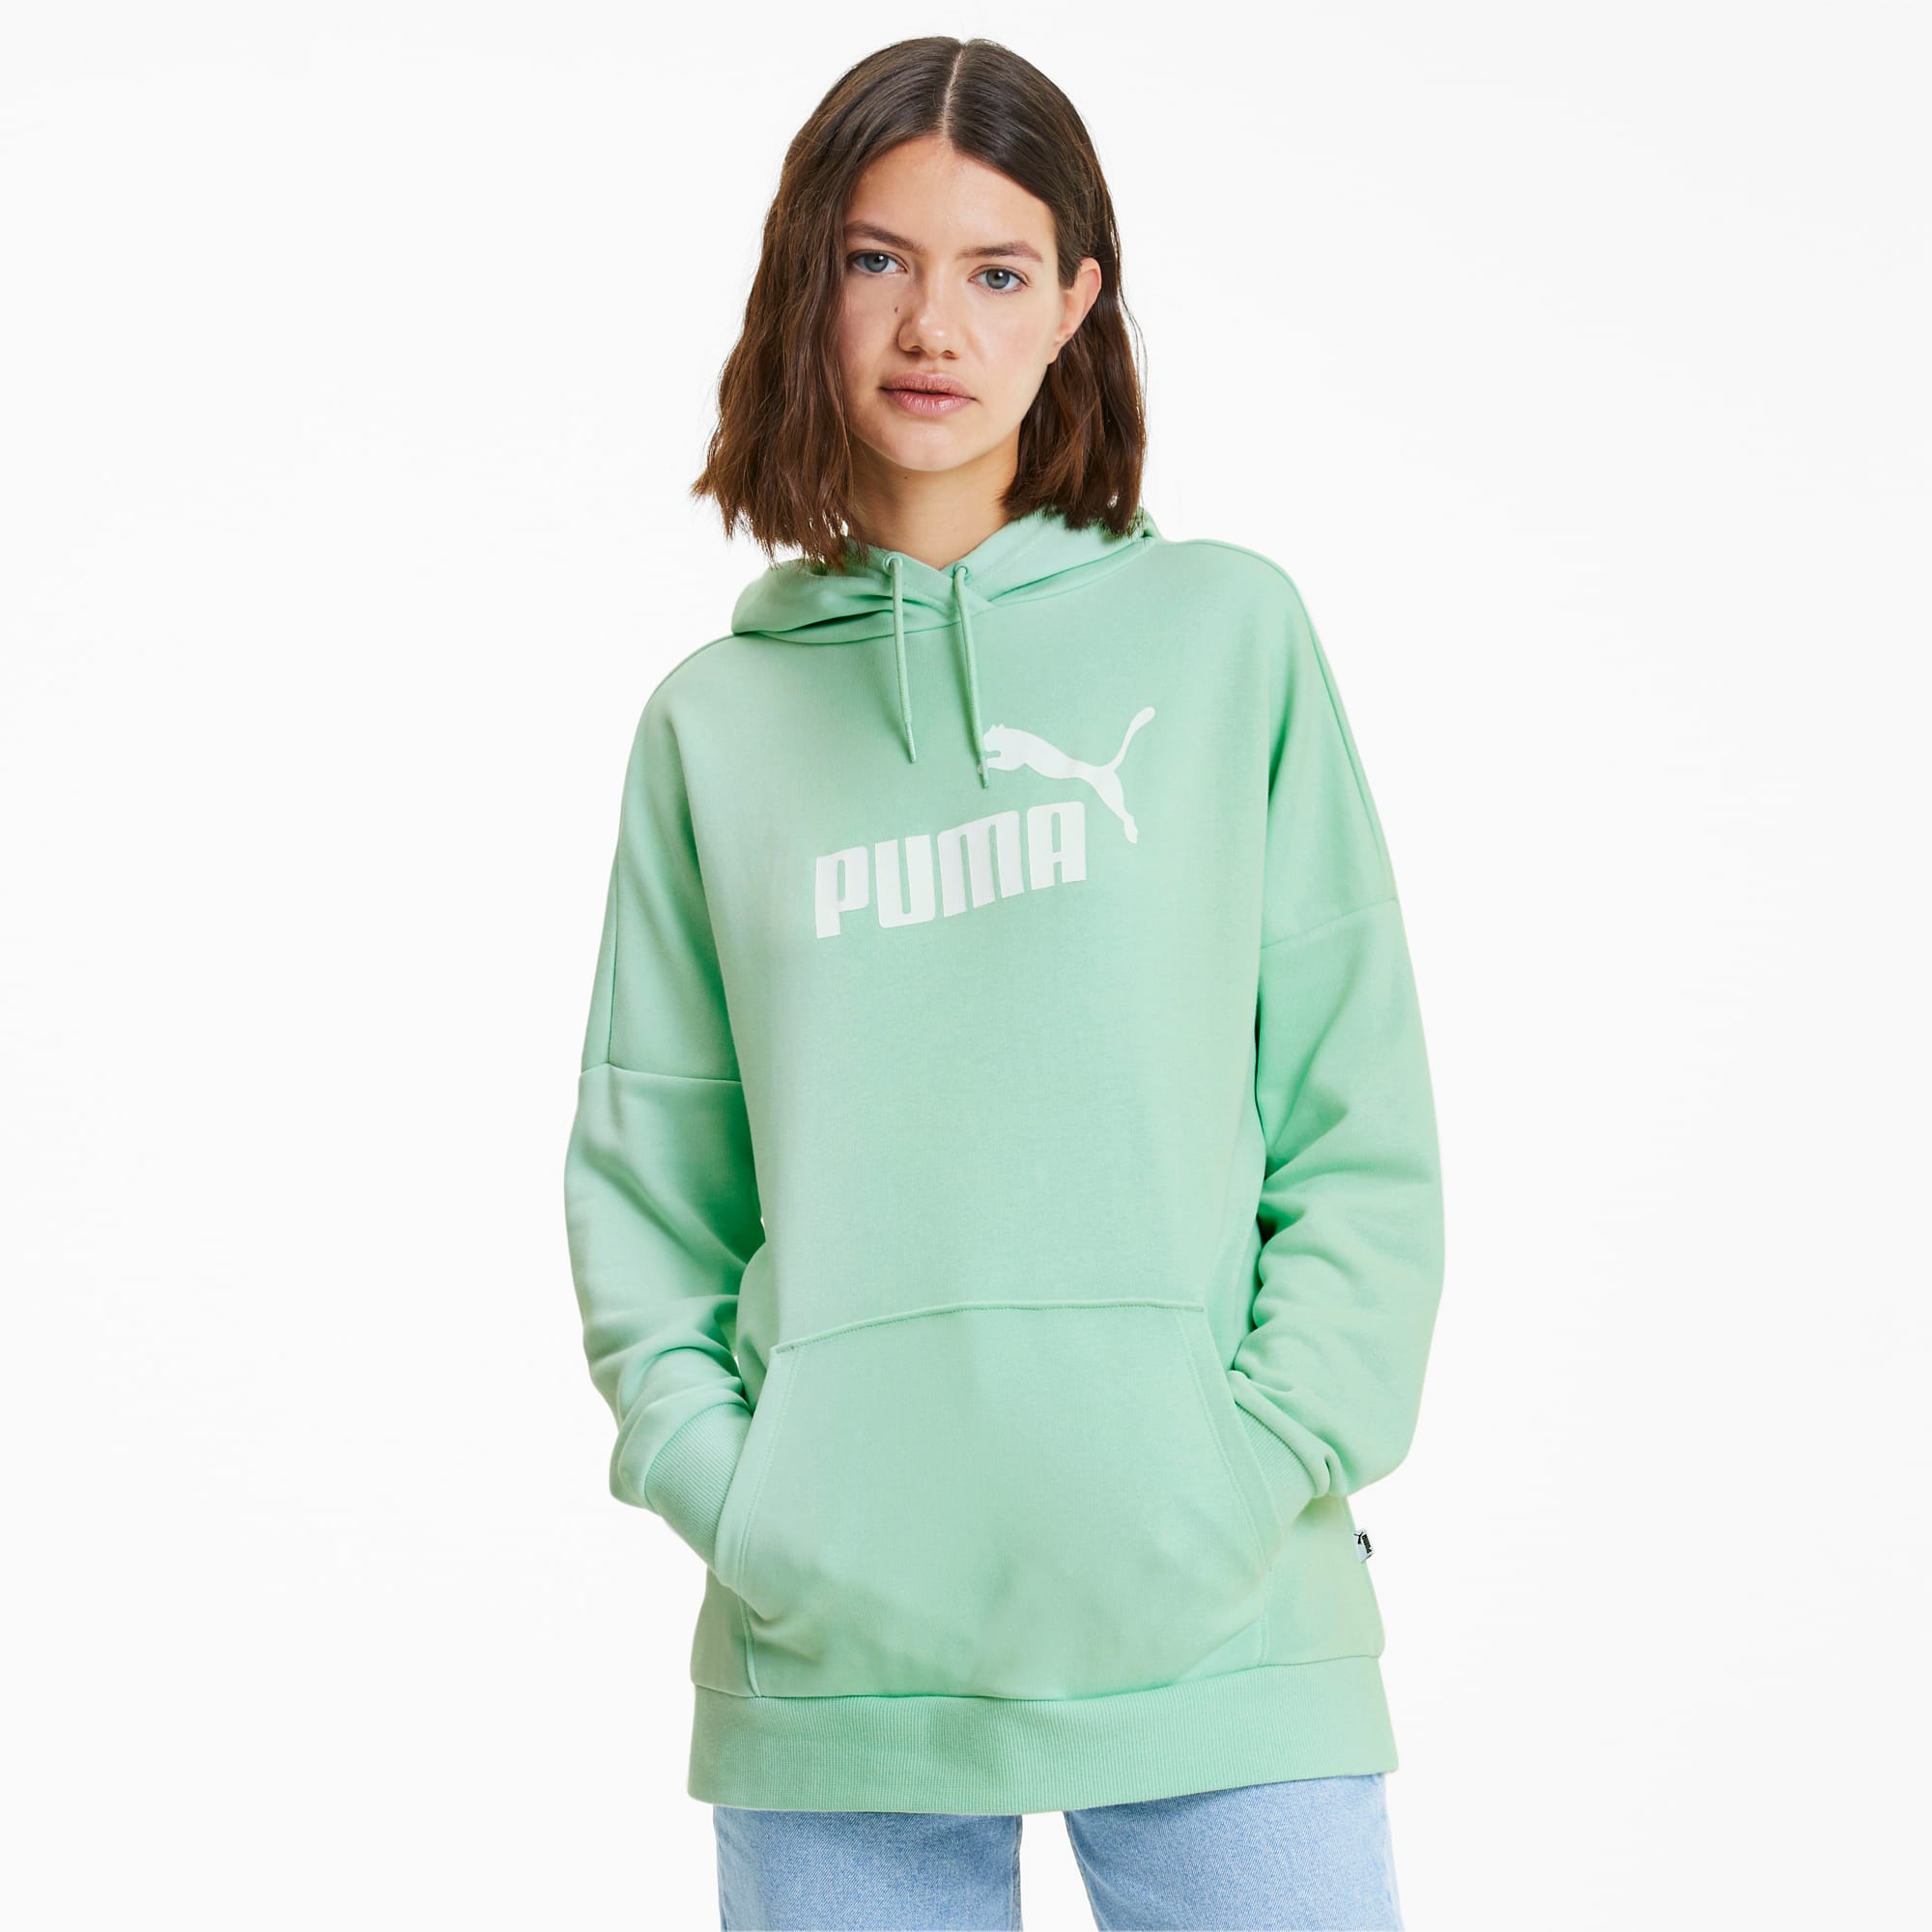 green puma sweatshirt